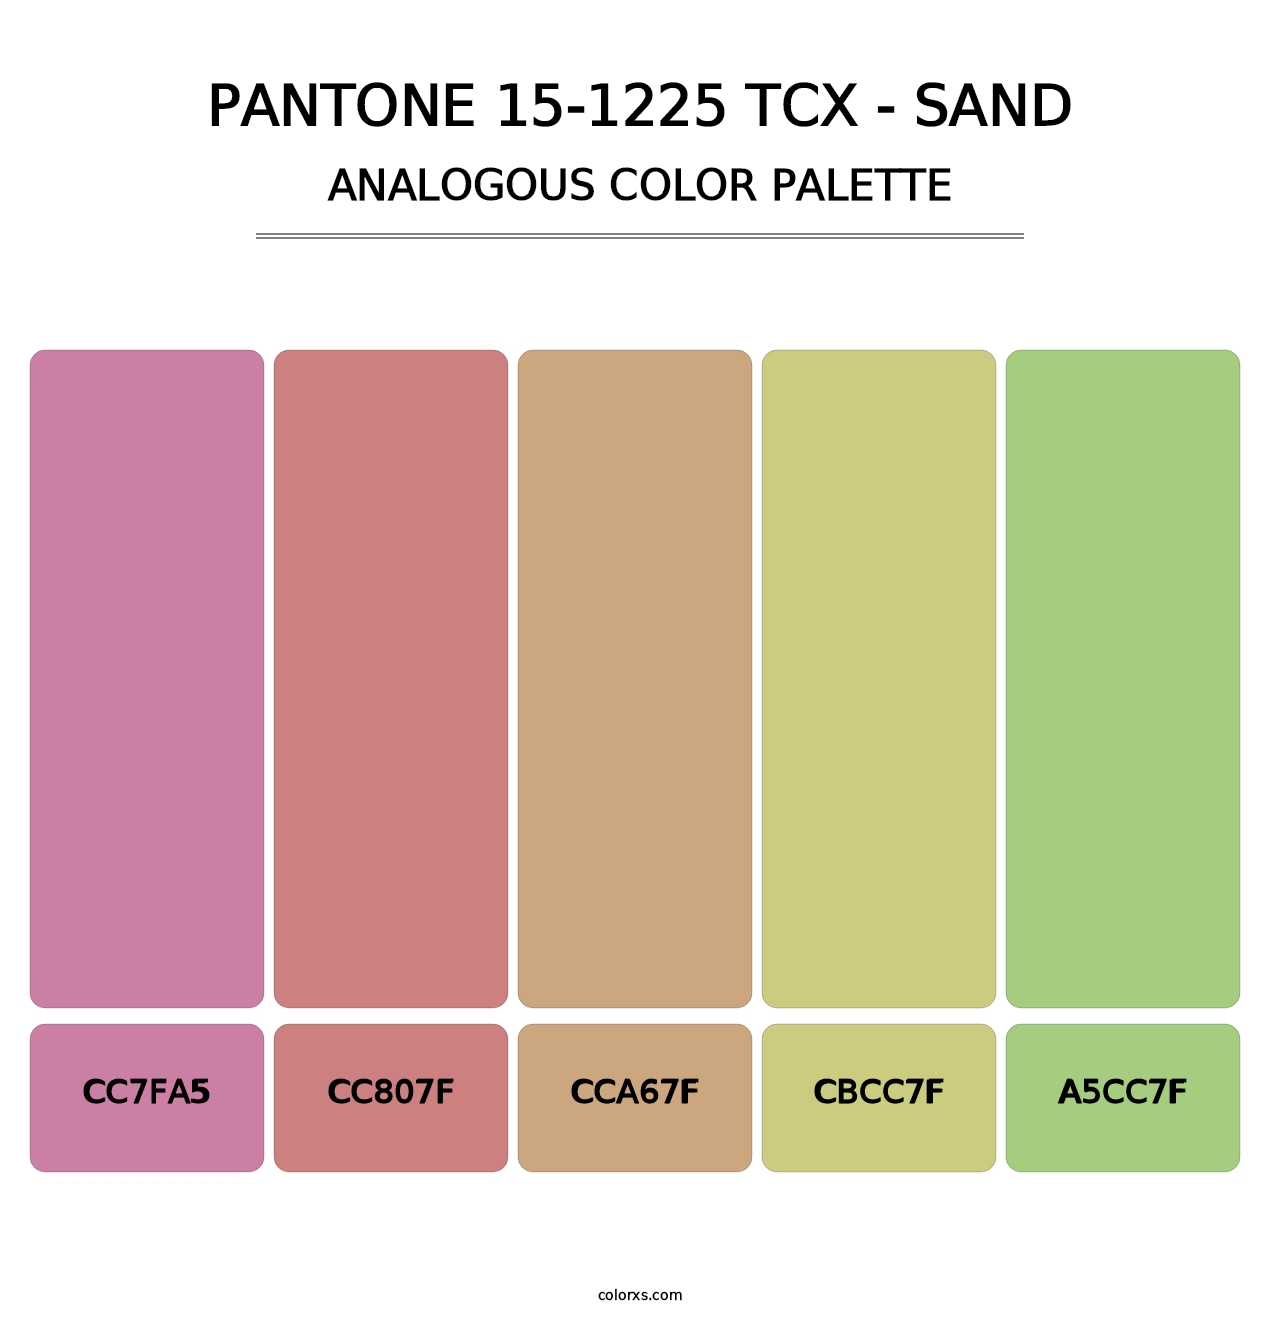 PANTONE 15-1225 TCX - Sand - Analogous Color Palette